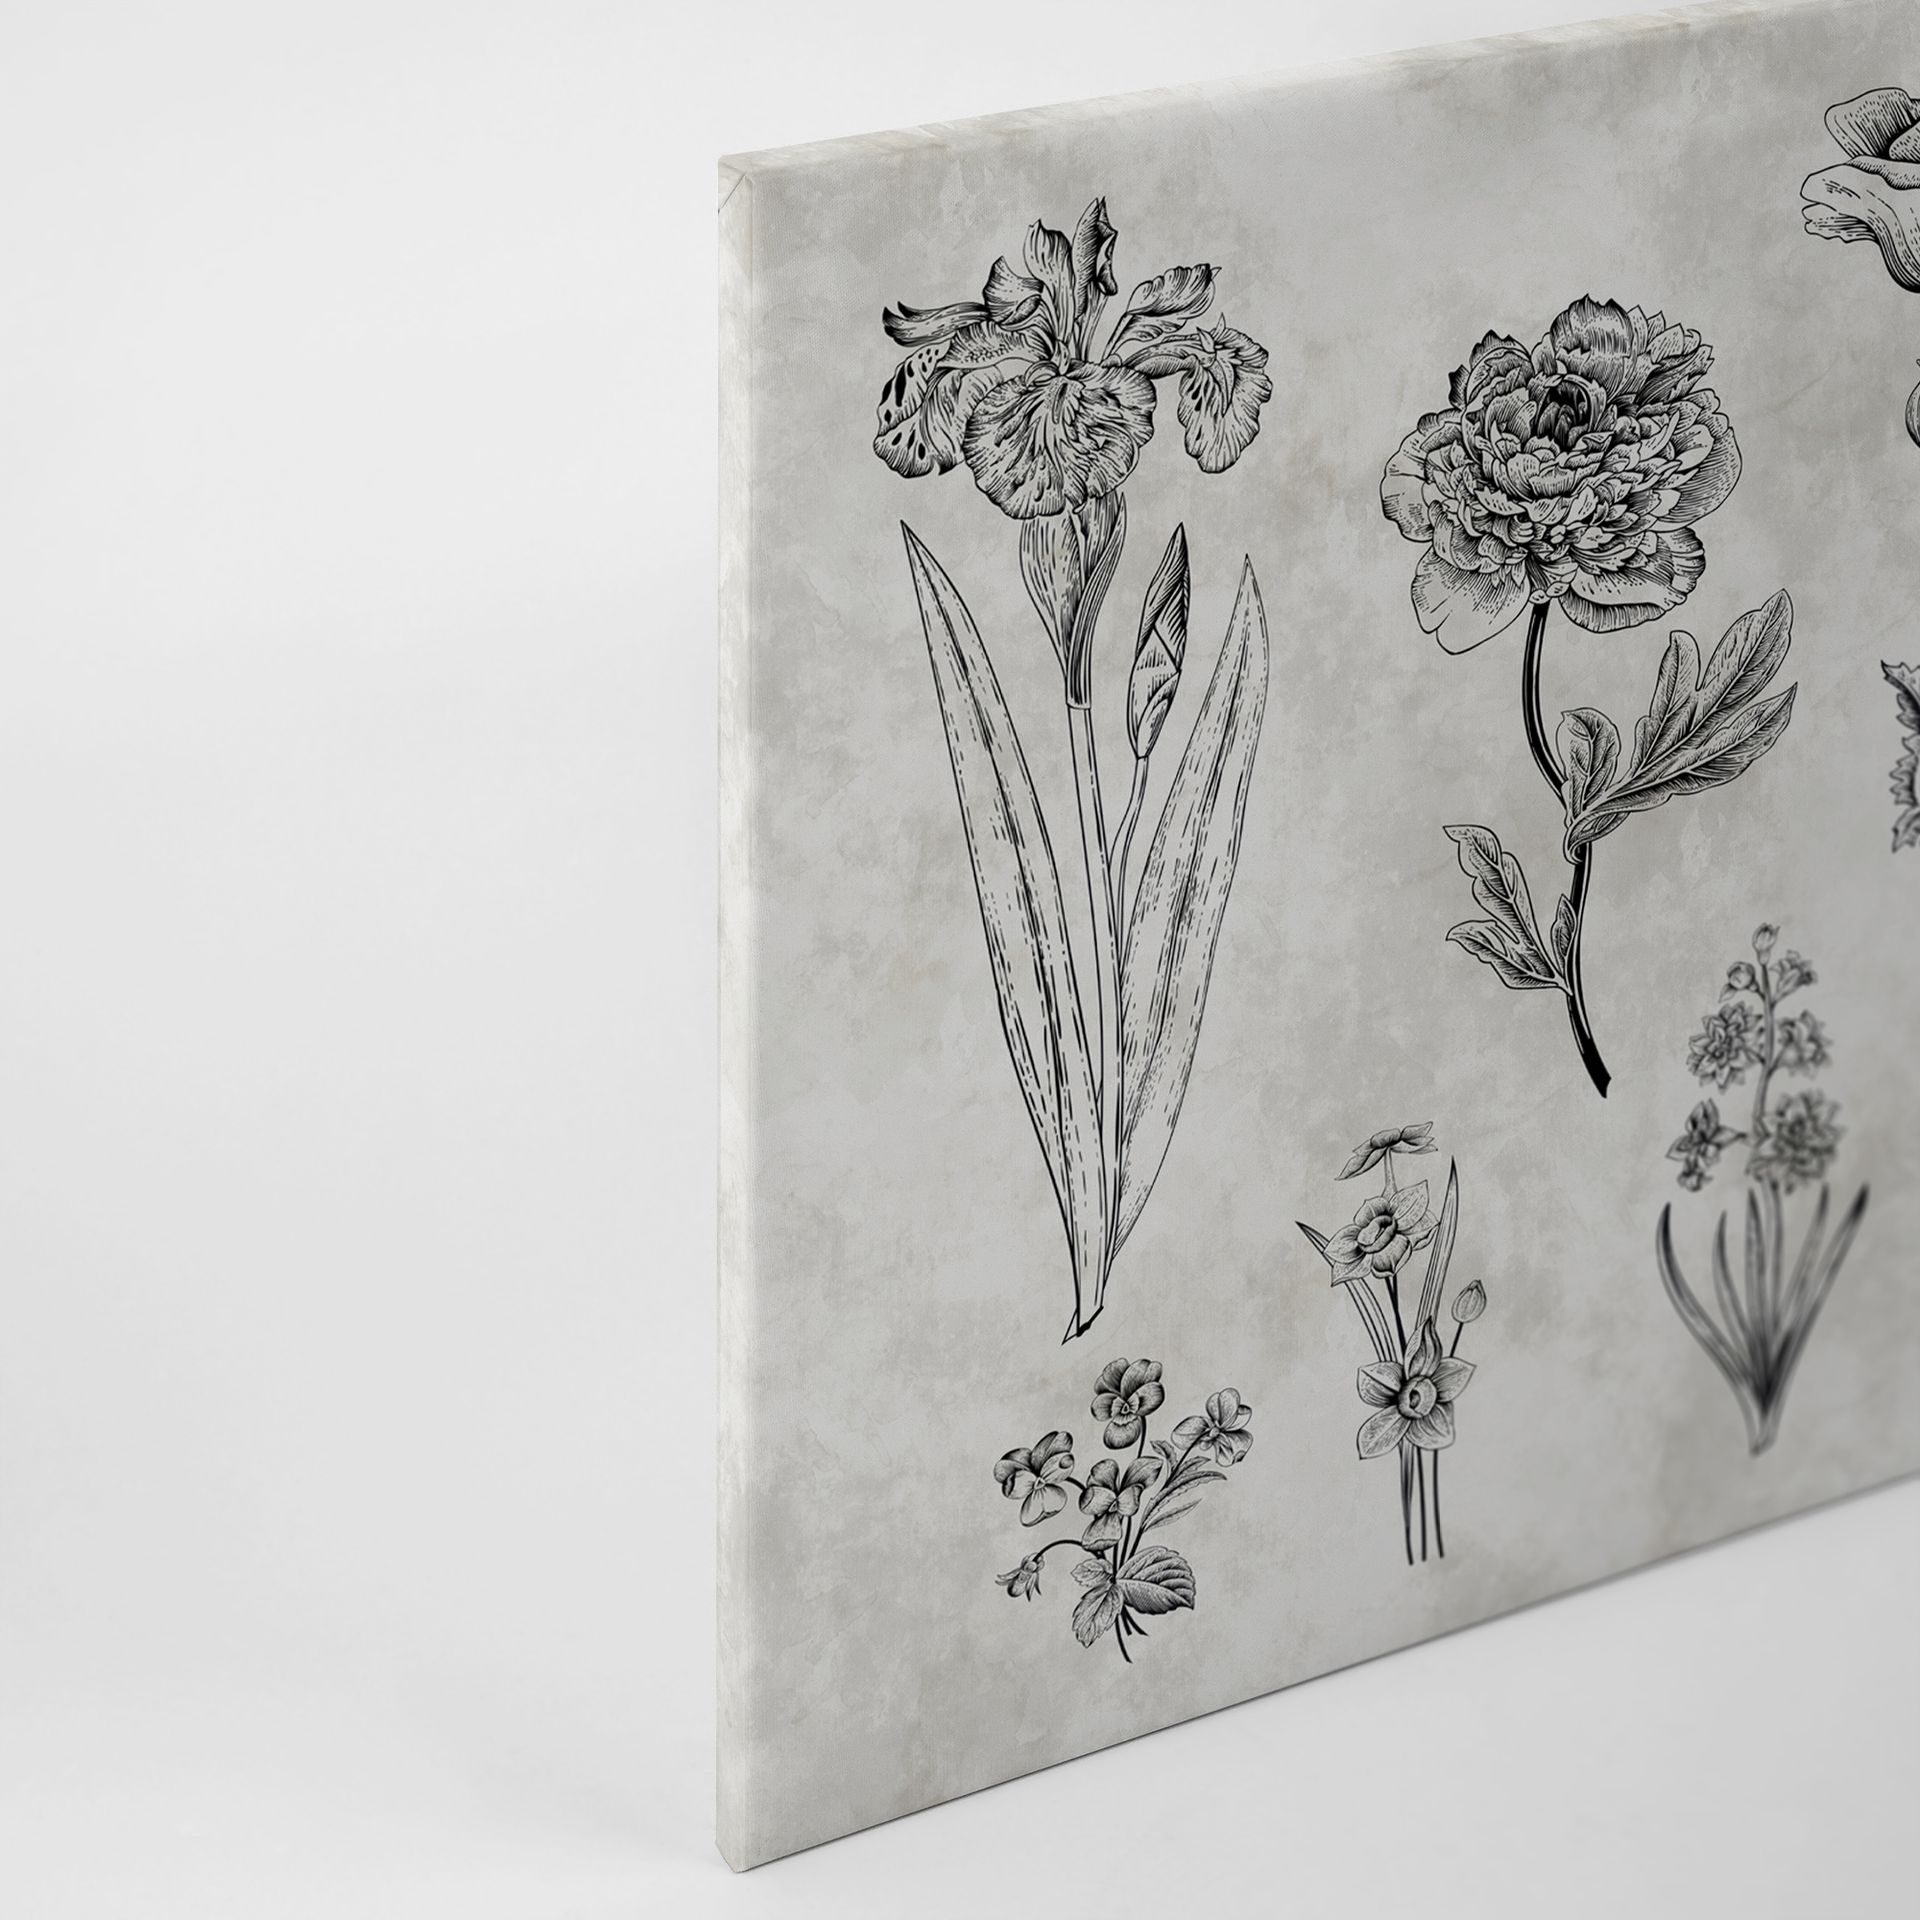 Leinwandbild Floralillustrationen, grau, 90x60 cm DD120364